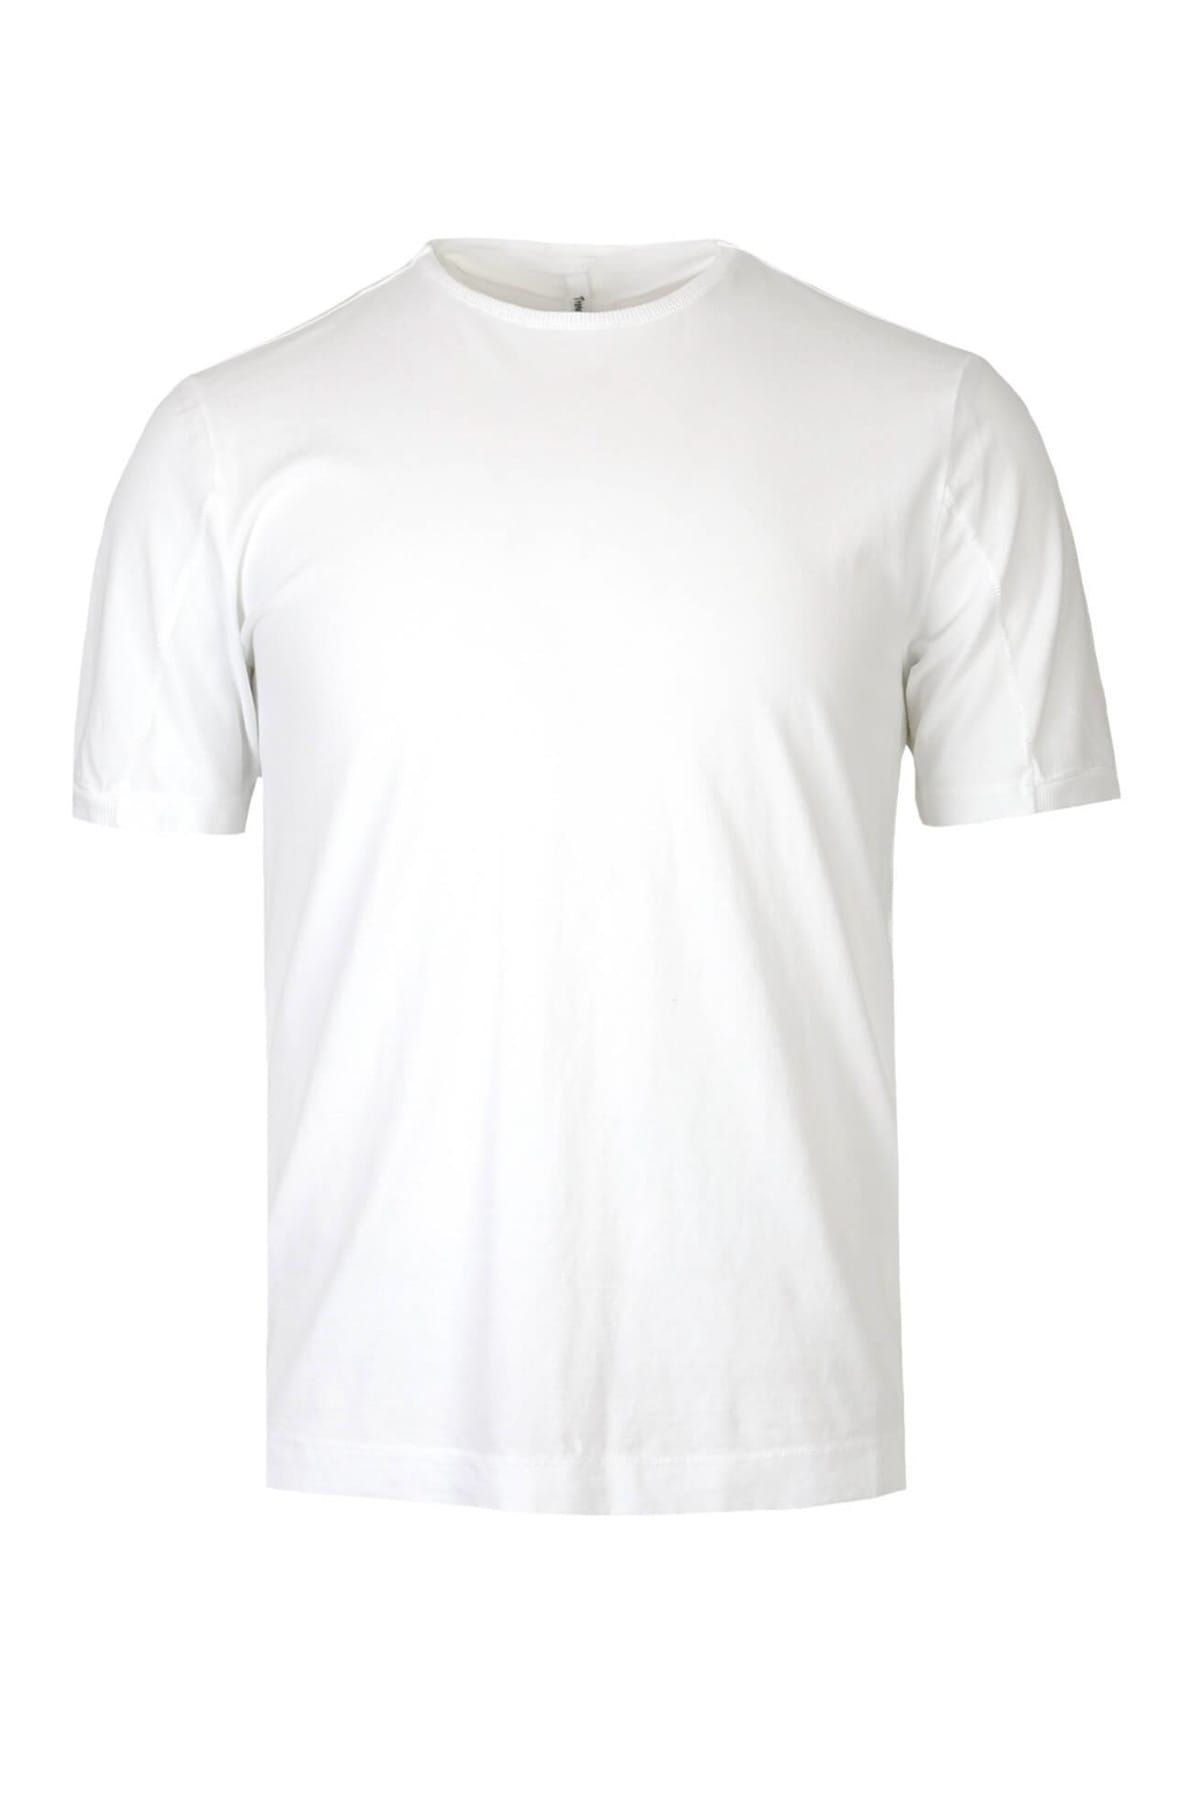 Transit Erkek Beyaz T-Shirt 1097074